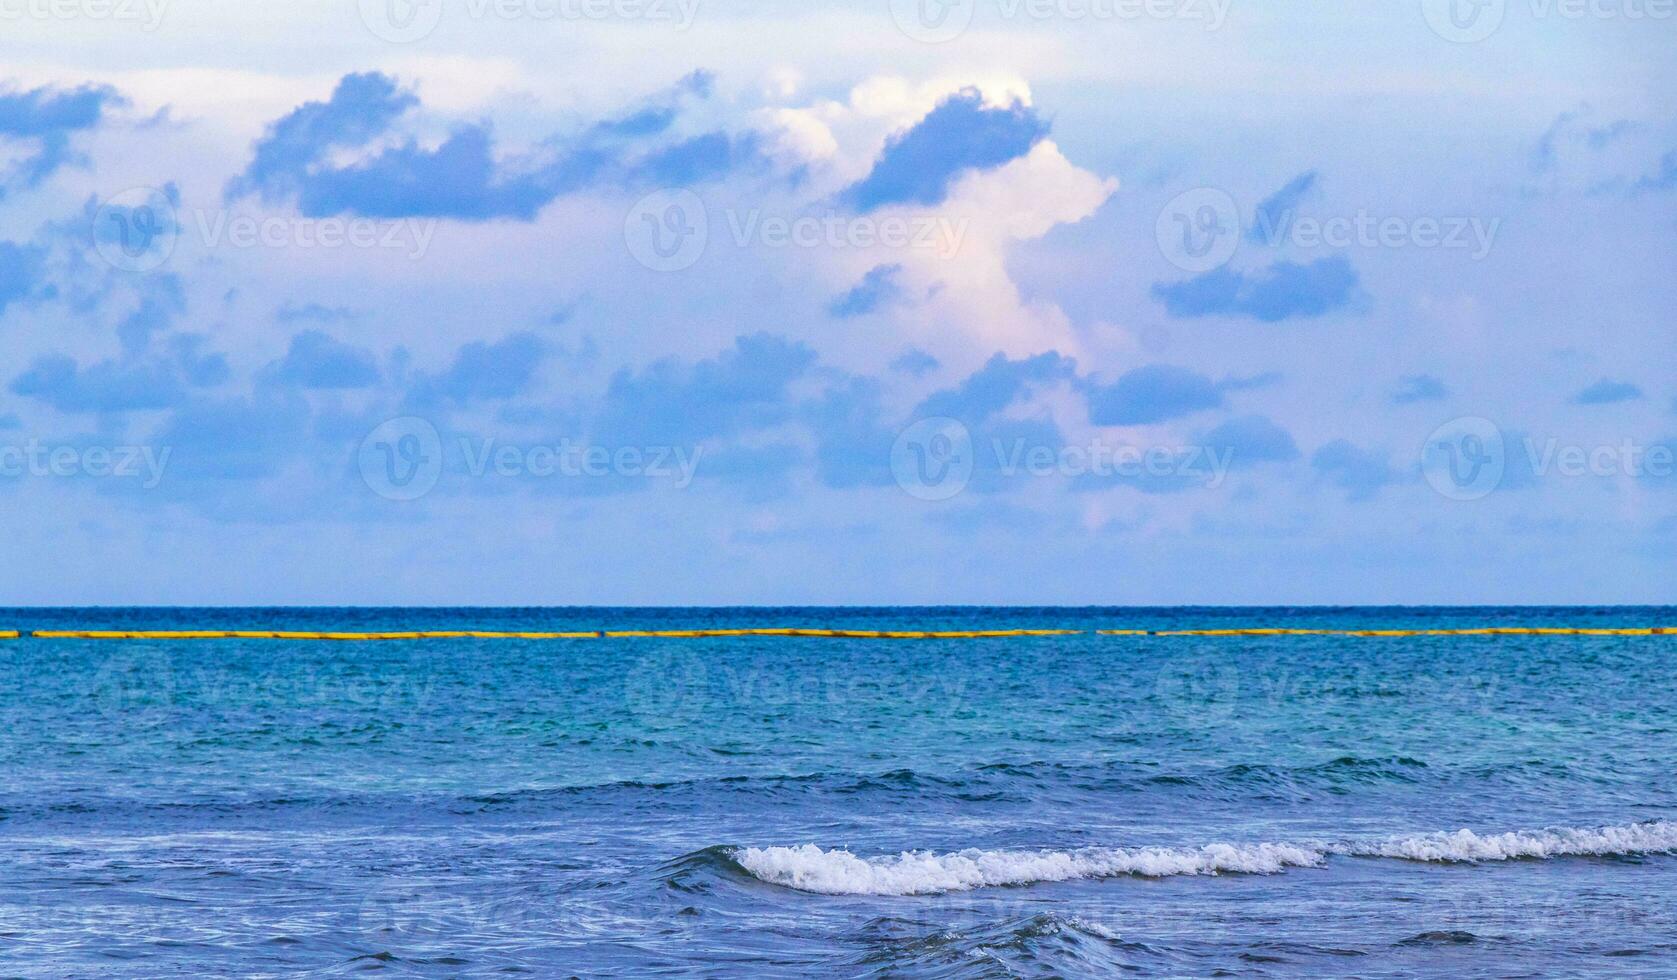 tropical mexicana praia águas turquesas playa del carmen mexico. foto